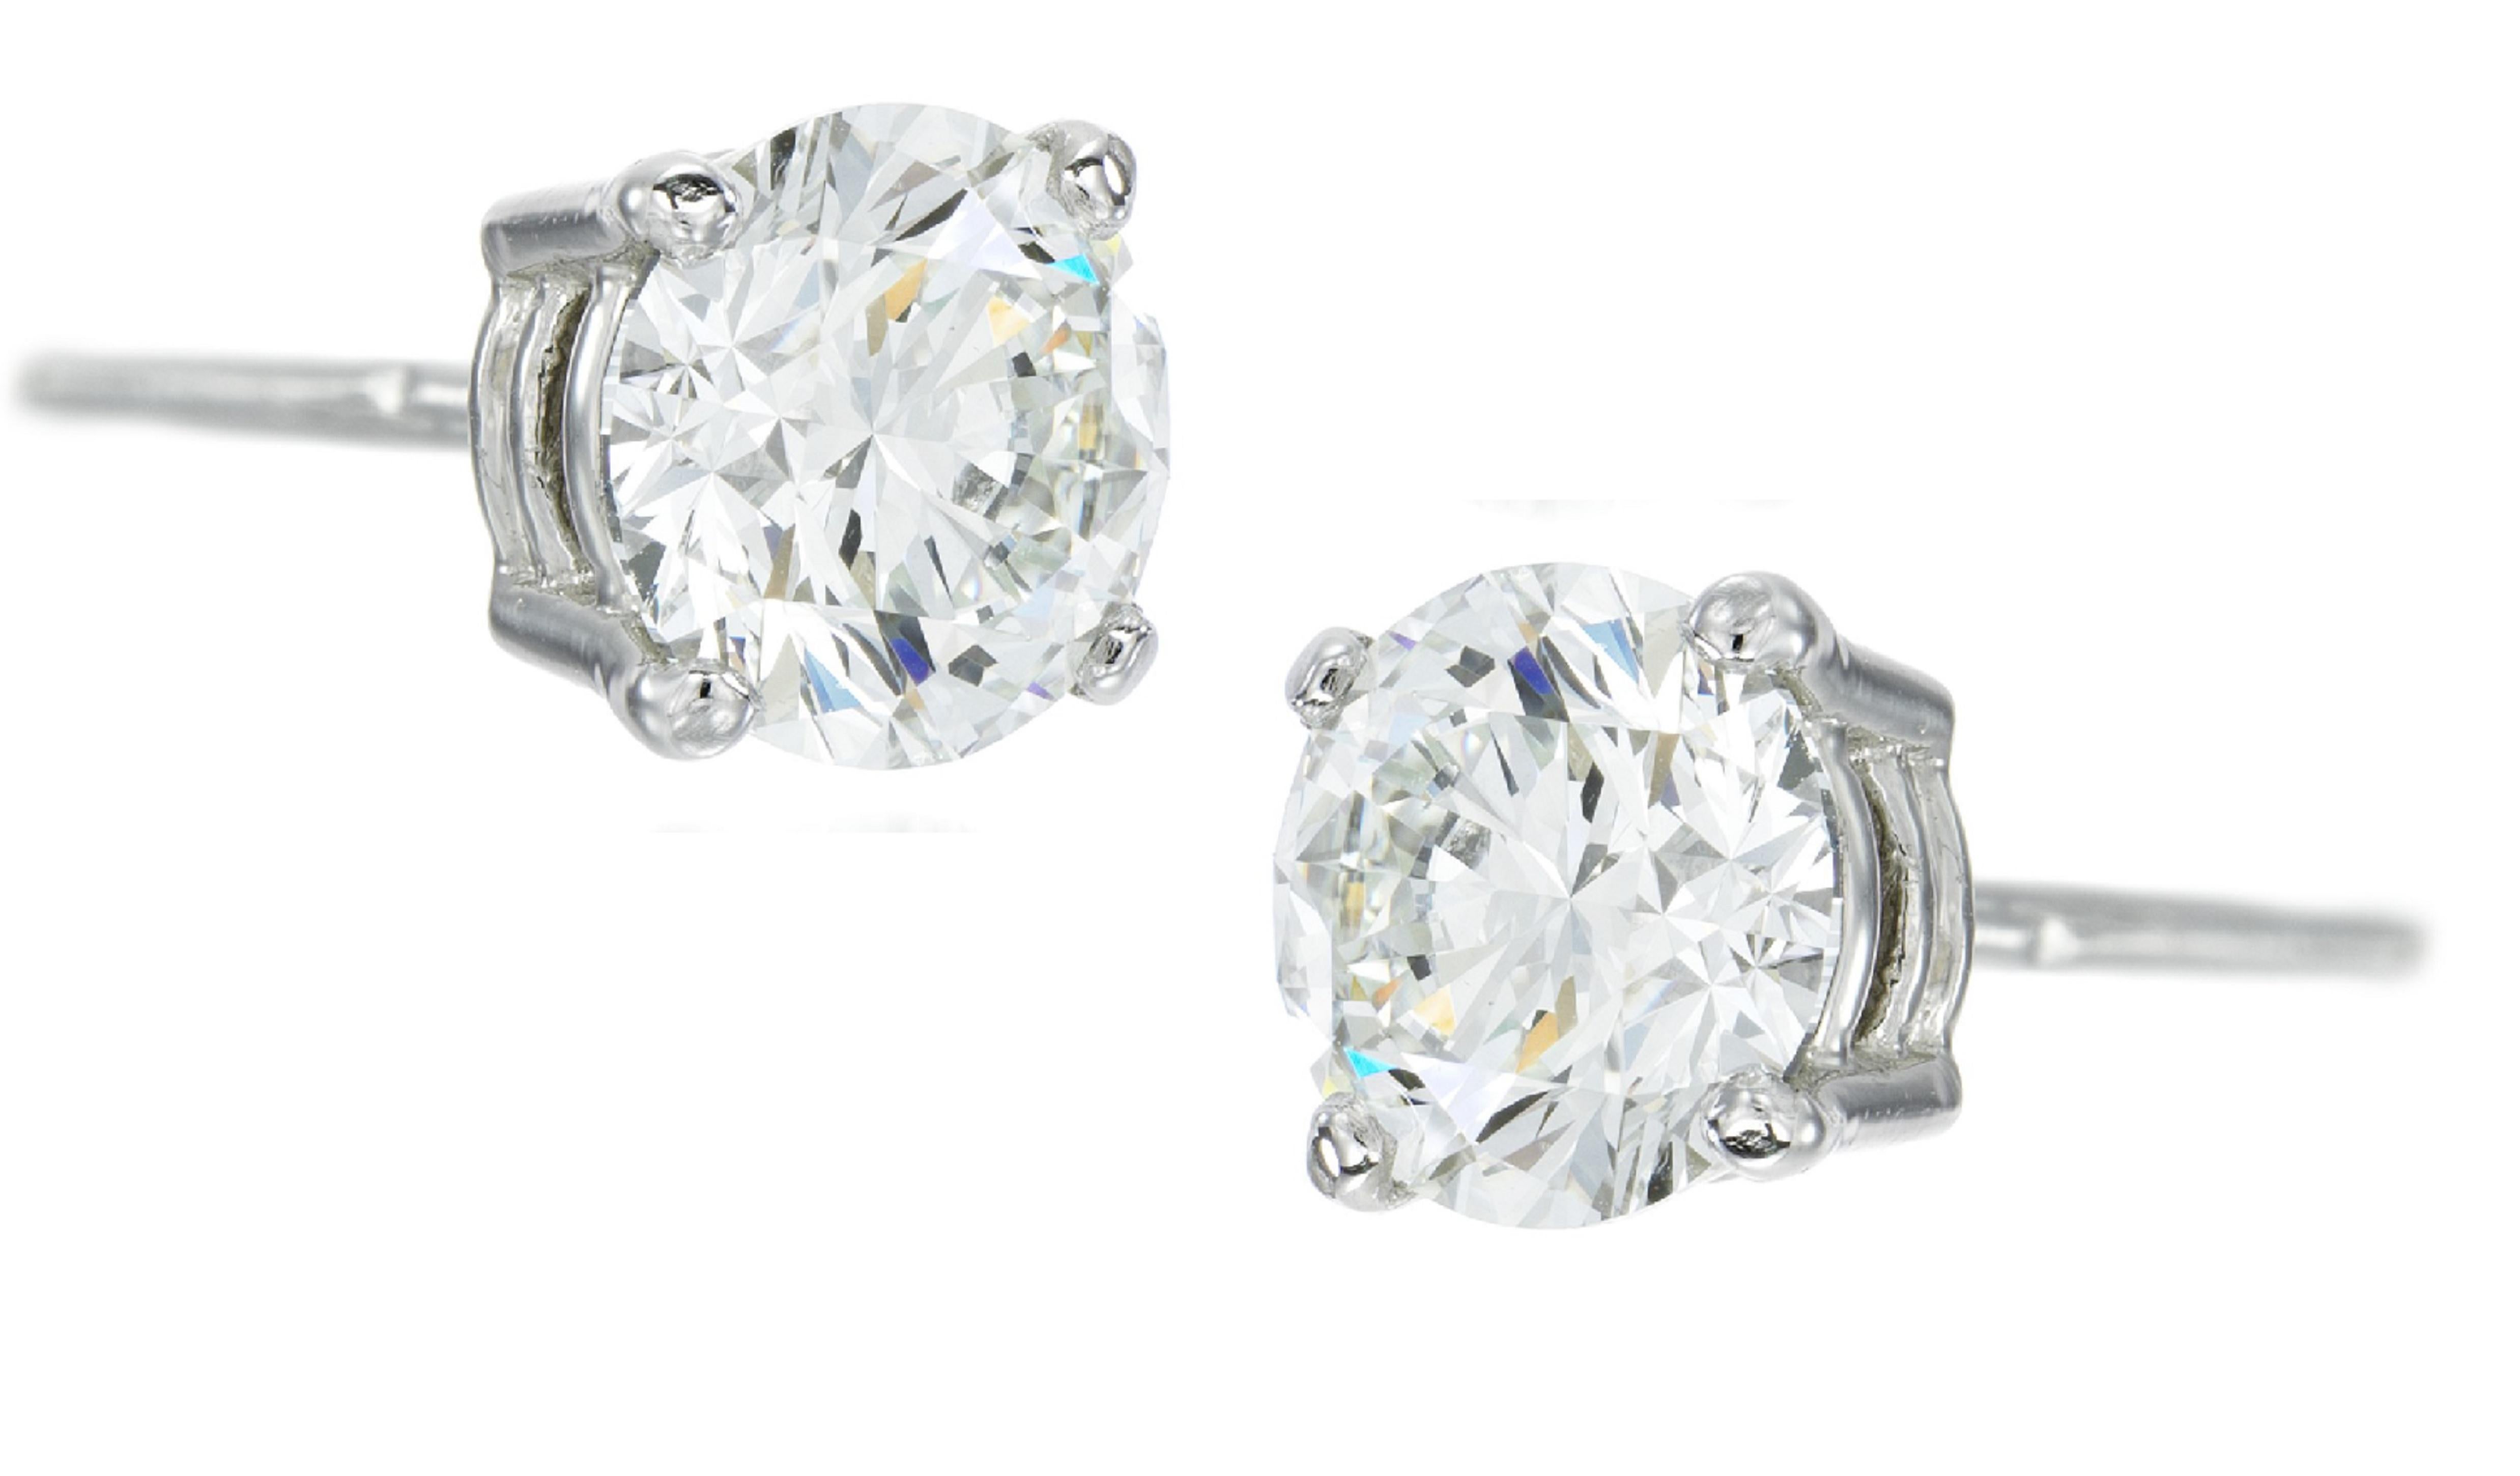 Außergewöhnliche GIA-zertifizierte 10 Karat Diamant-Ohrstecker im runden Brillantschliff 
Ausgezeichnetes Polnisch
Ausgezeichnete Symmetrie
Schwache Fluoreszenz 

J
SI1-2